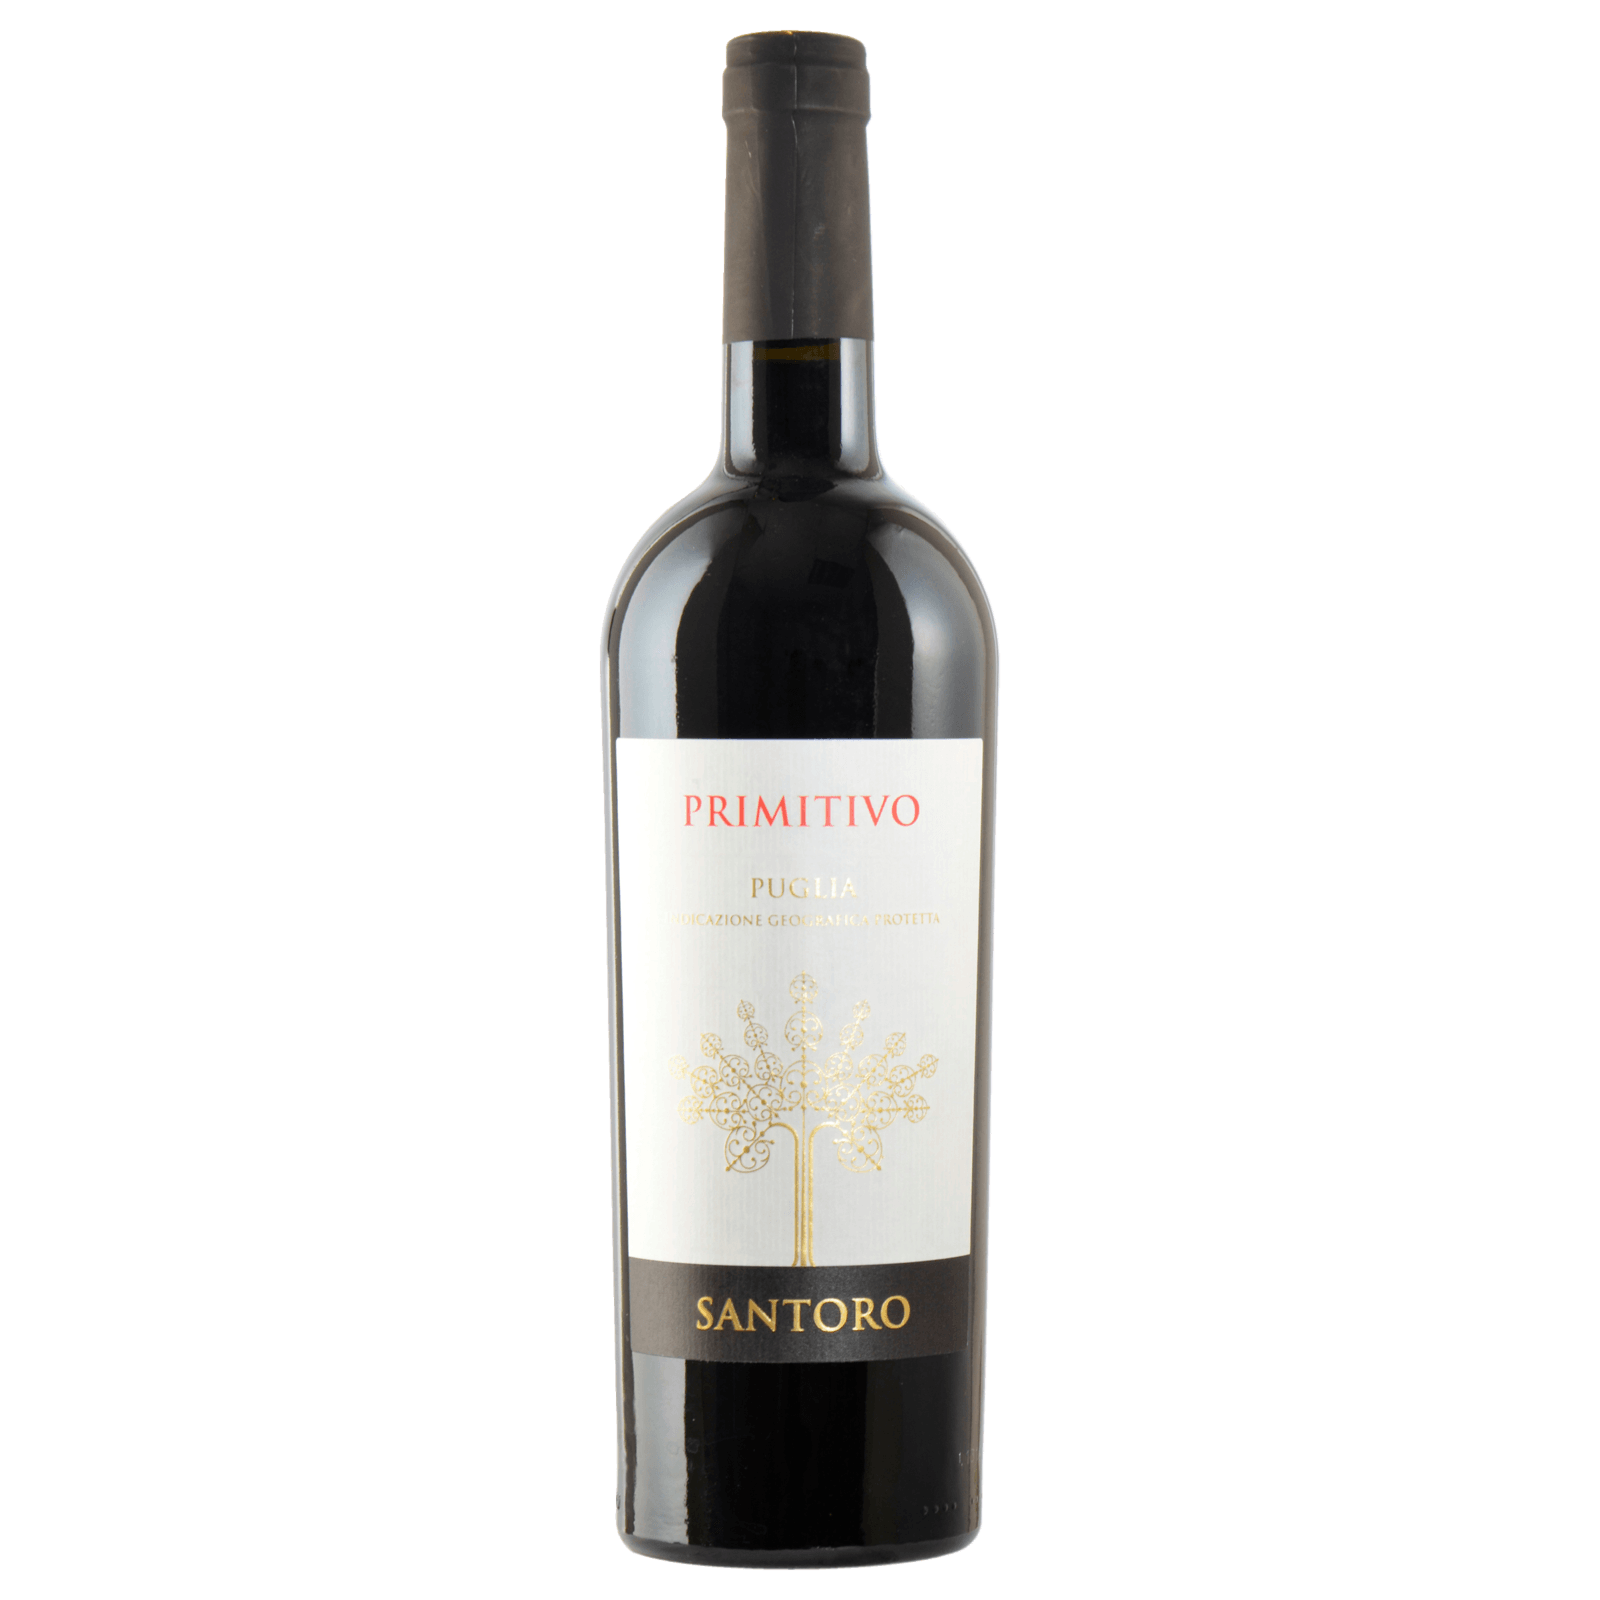 Santoro Rotwein Primitivo Puglia IGP trocken 0,75l  für 5.99 EUR